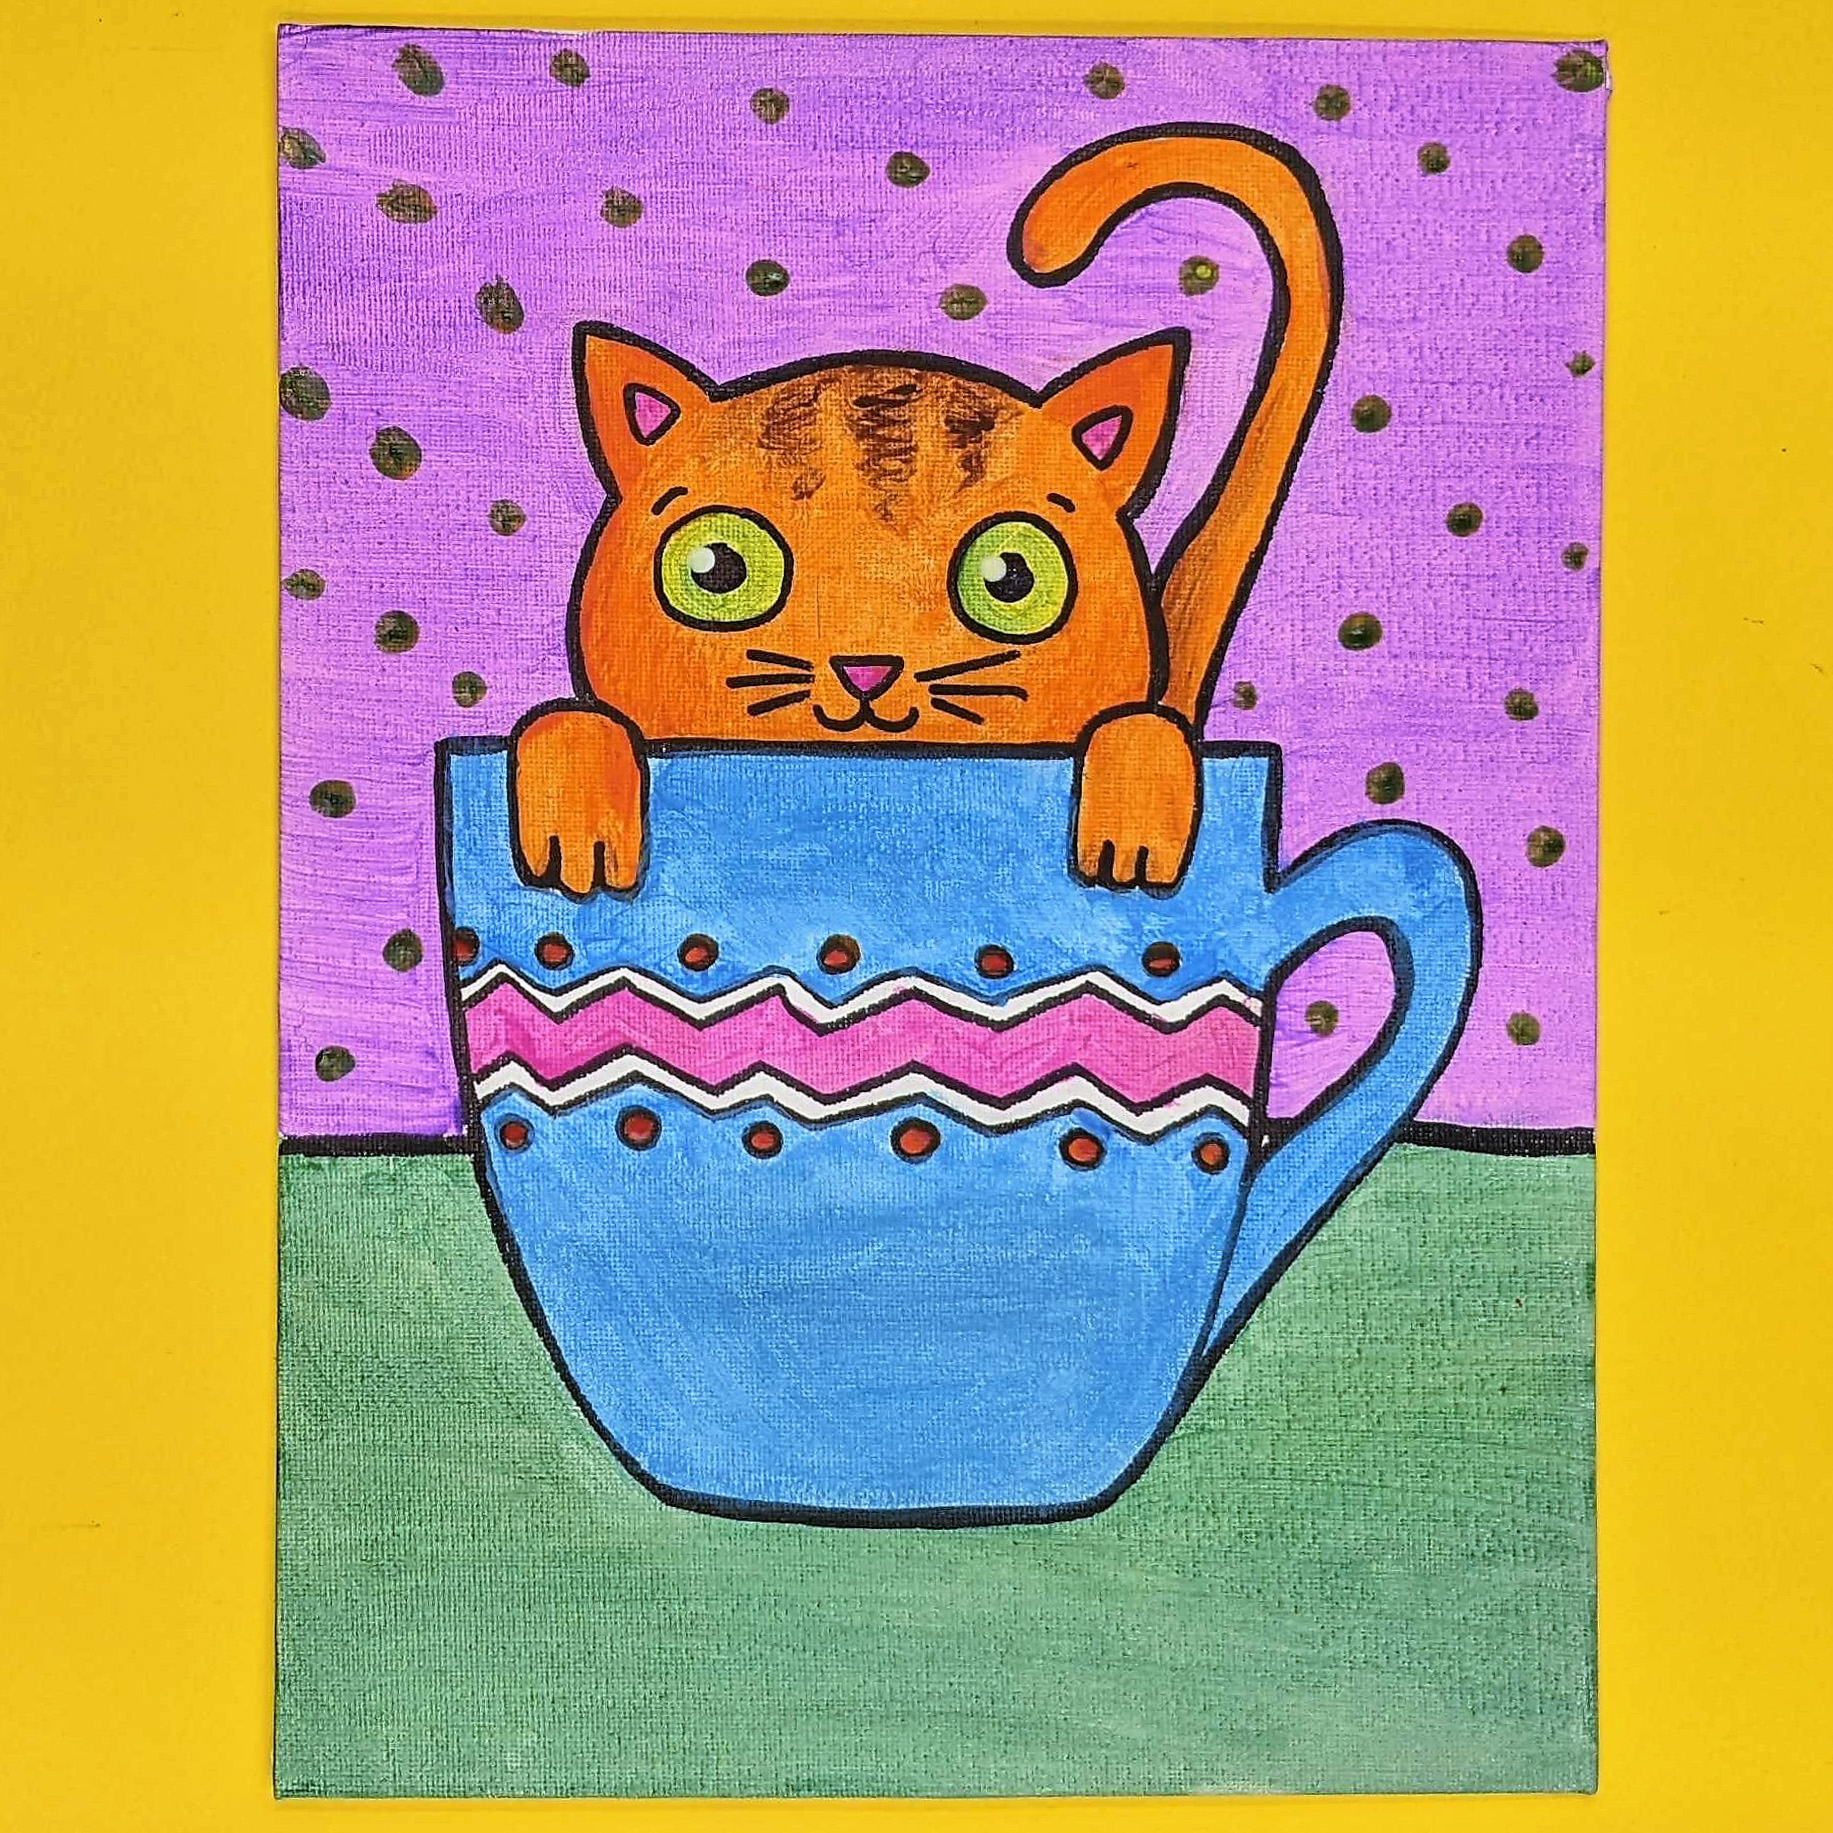 Kidcreate Studio - Mansfield, Teacup Kitten Art Project